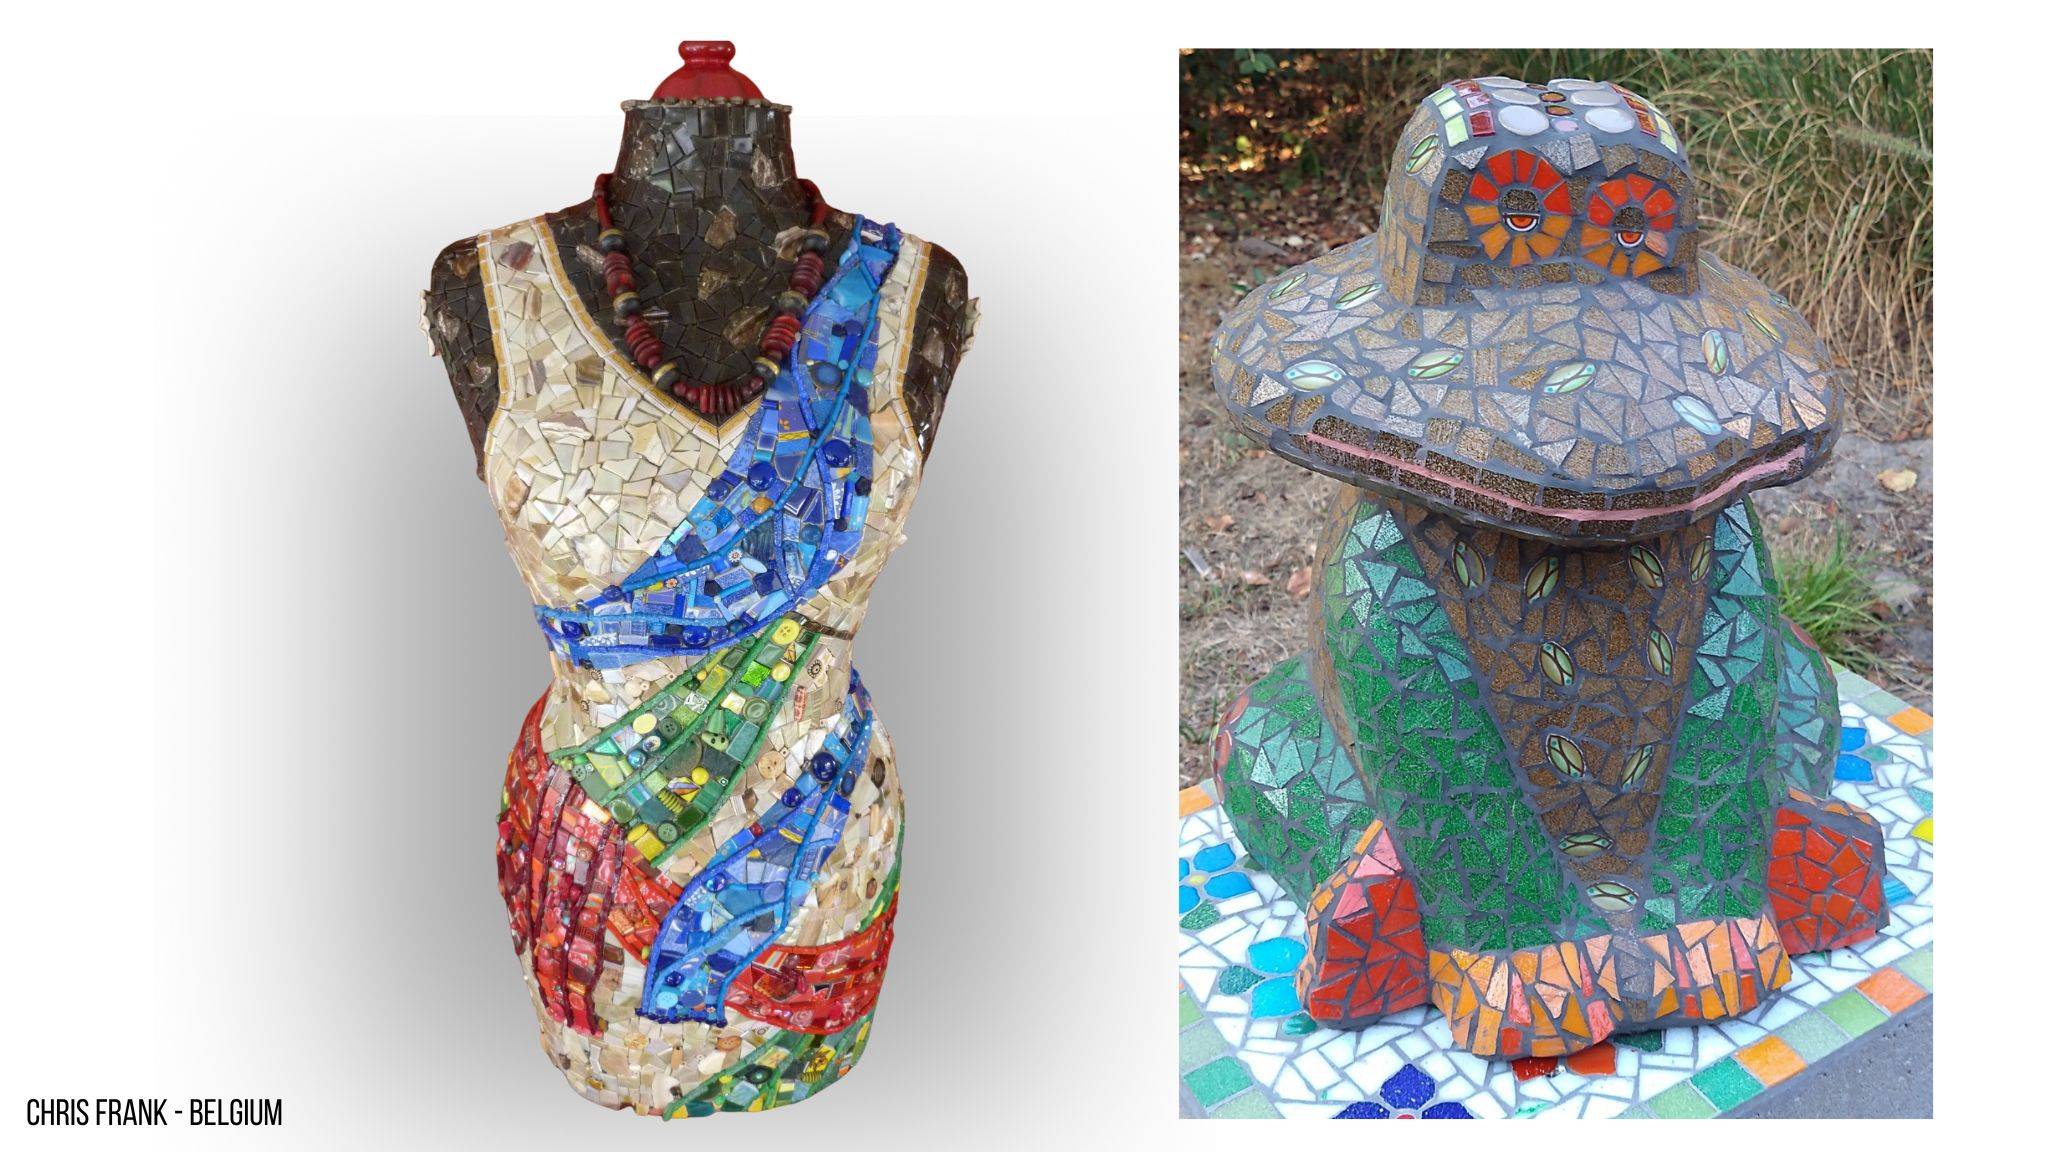 Linker foto: Een mozaïeken vrouwentorso gemaakt in verschillende kleuren glasmozaiek. De torso heeft een witte jurk met de kleuren blauw, rood en groen in verwerkt. Rechter foto: Een bruine kikker zittend op de grond gemaakt in mozaiek. Het glasmozaiek is op maat geknipt.